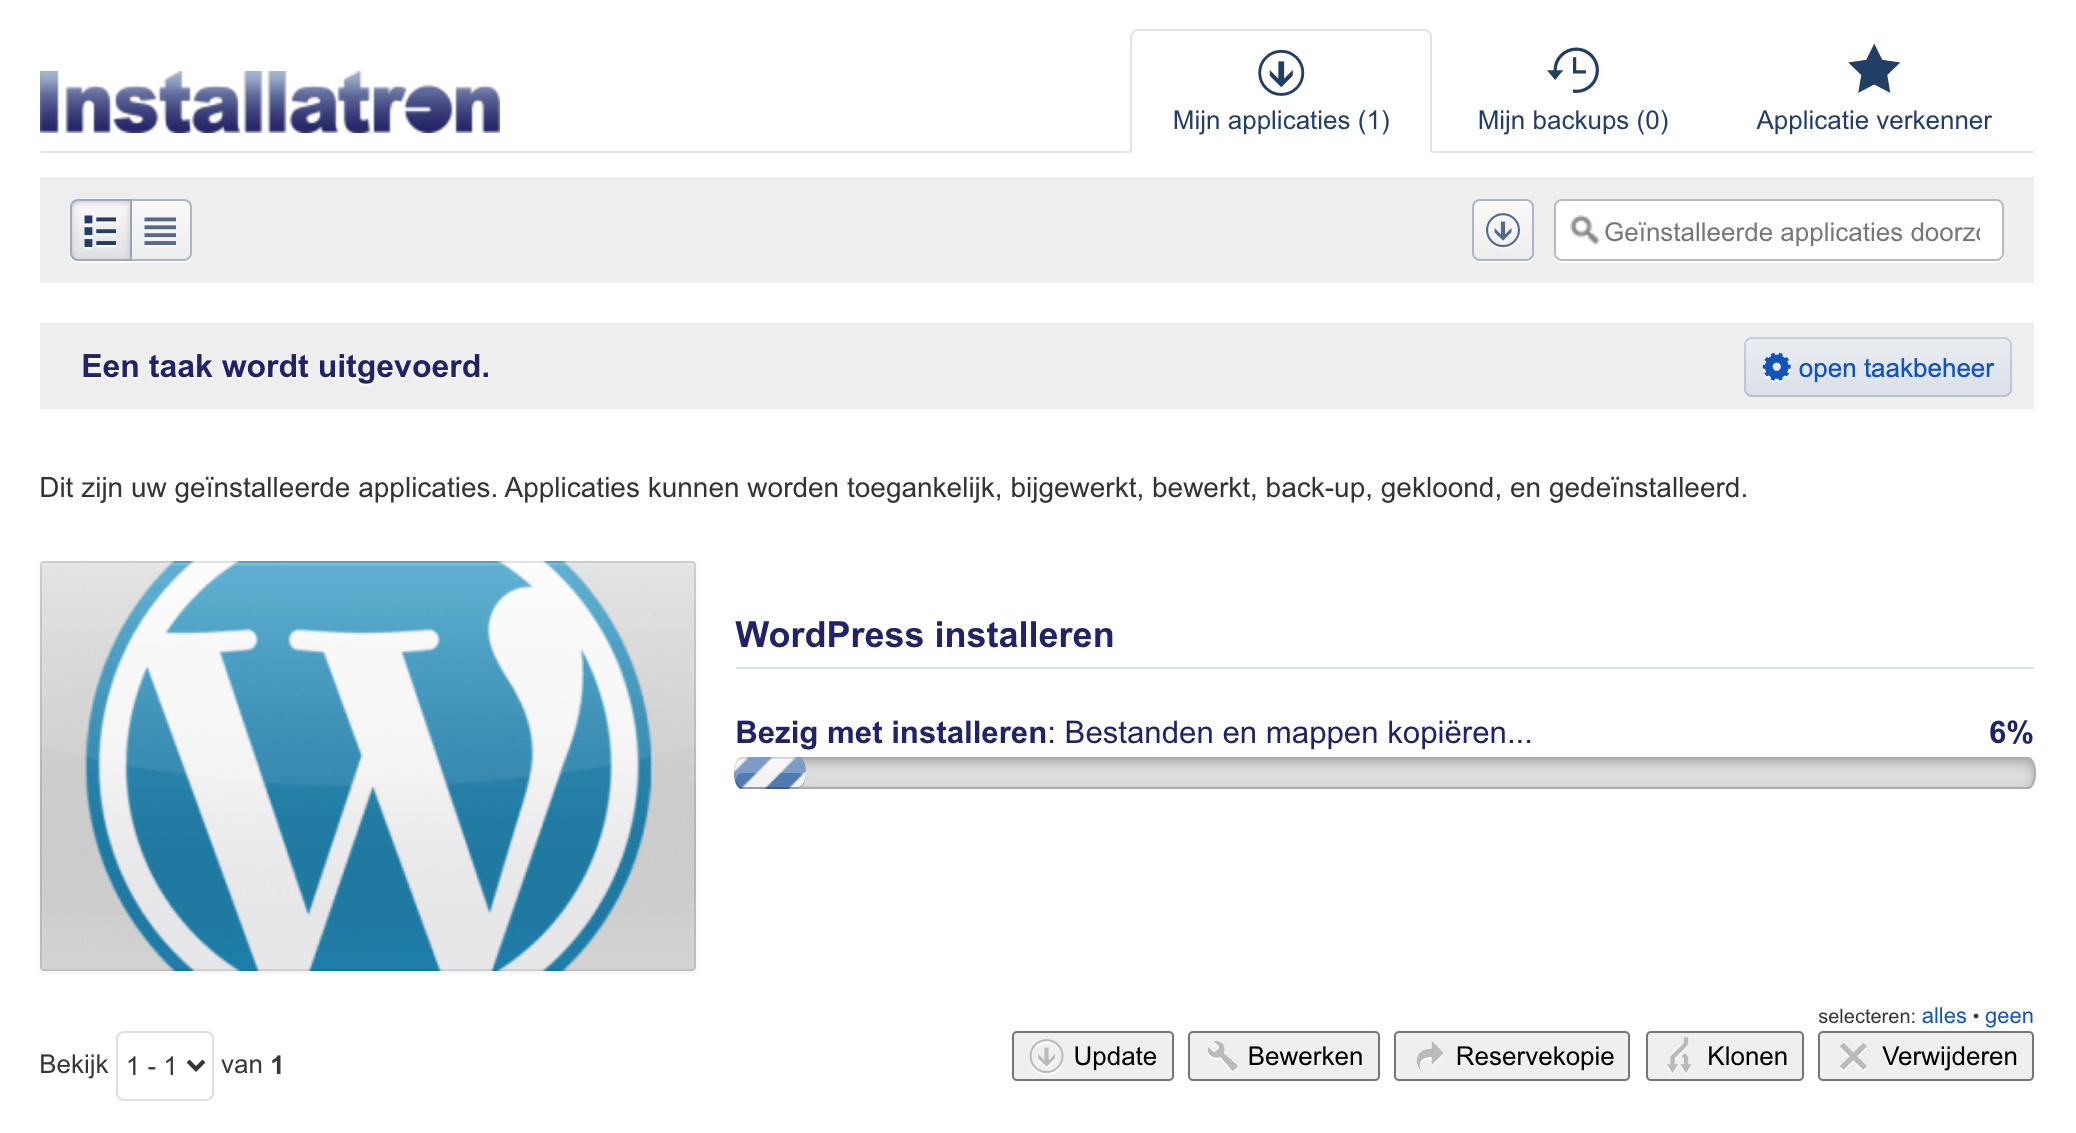 Venster met laadbalk tijdens het installeren van WordPress